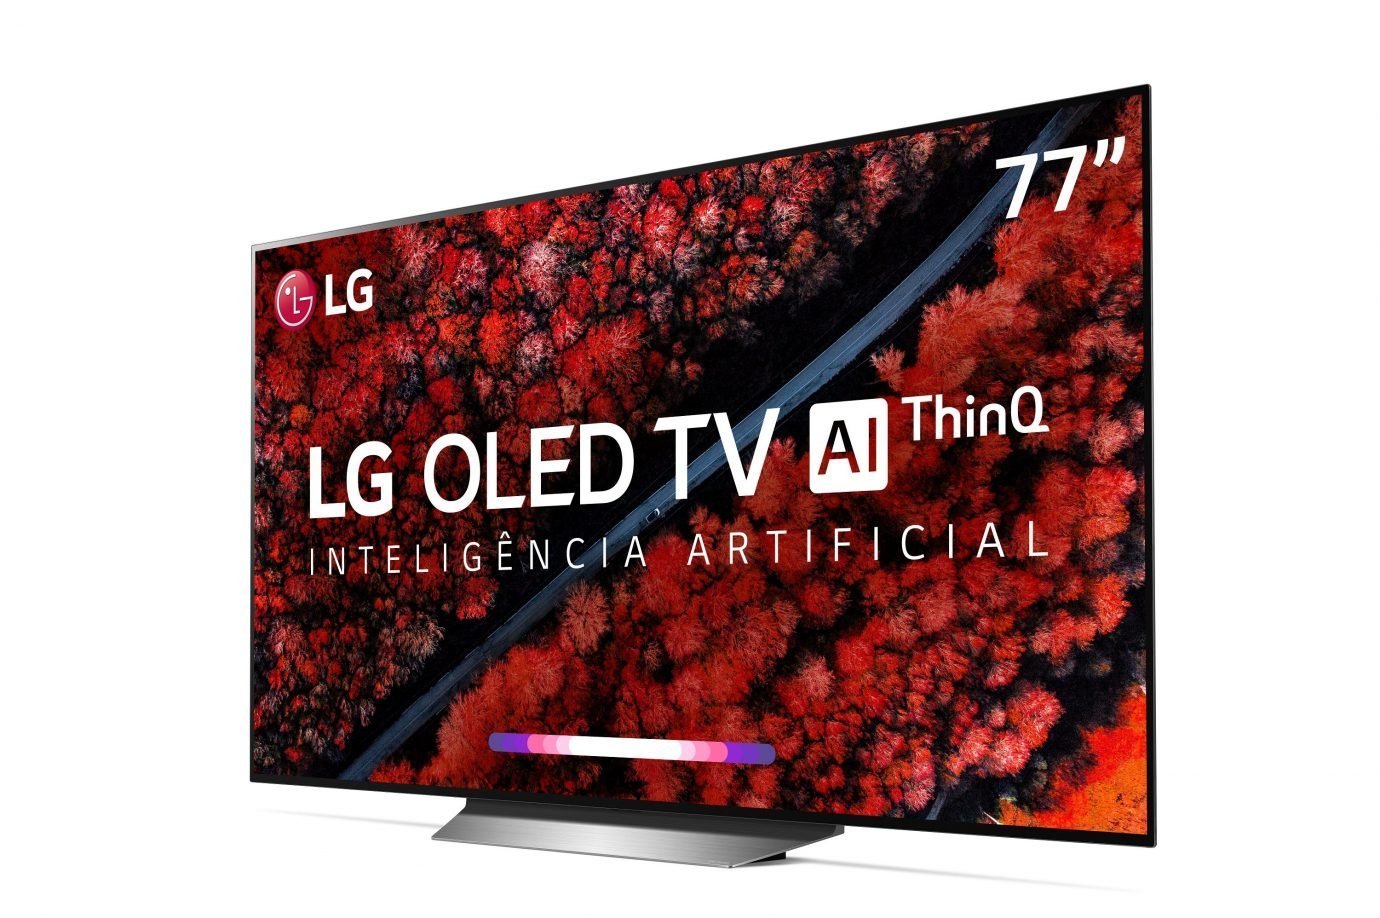 Smart TV LG OLED 77 C9 2019